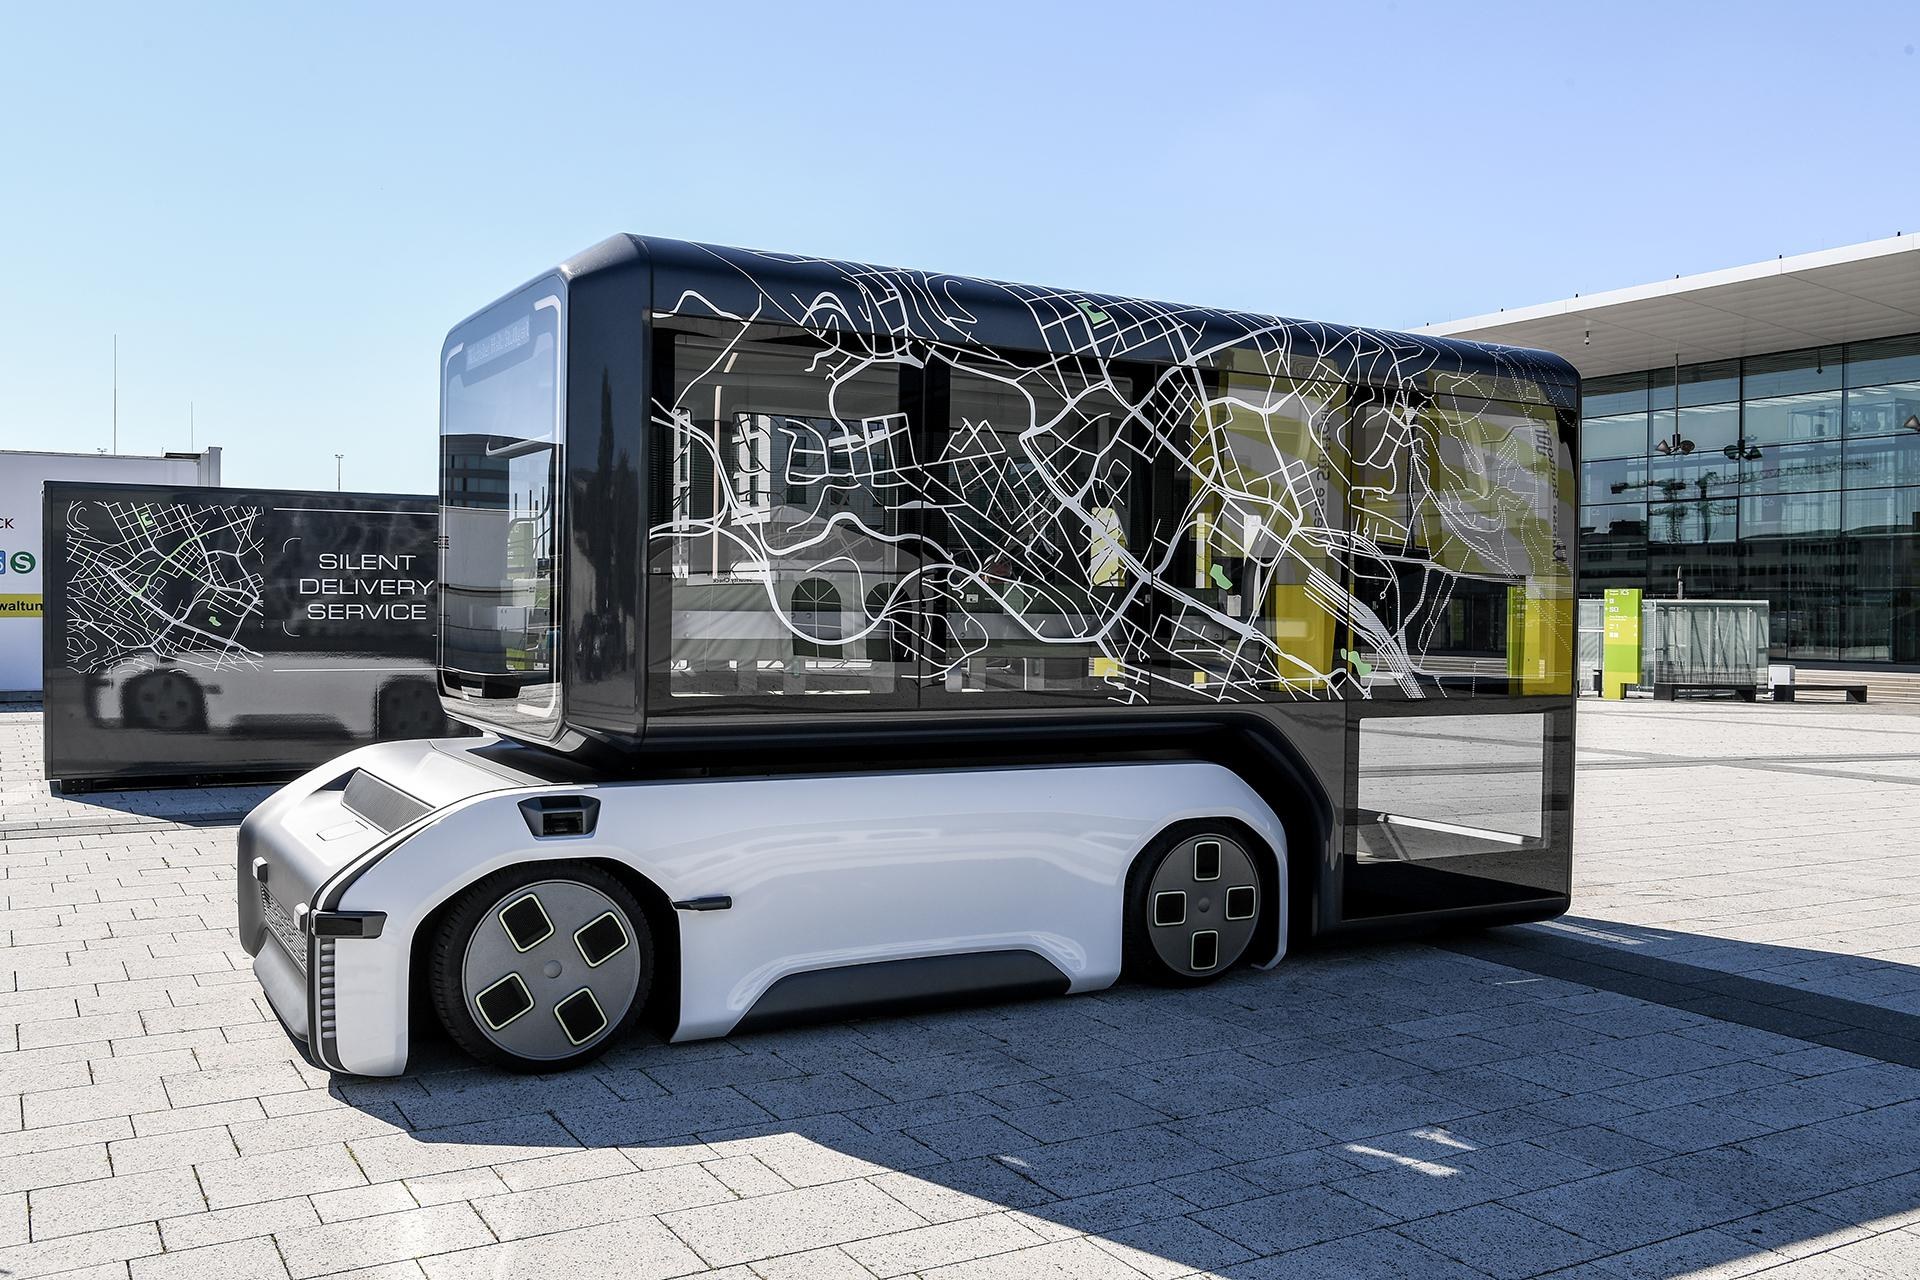 Modulares Mobilitätskonzept: Das autonom fahrende U-Shift-Driveboard kann unterschiedliche Aufbauten für den Personen- oder Gütertransport aufnehmen.